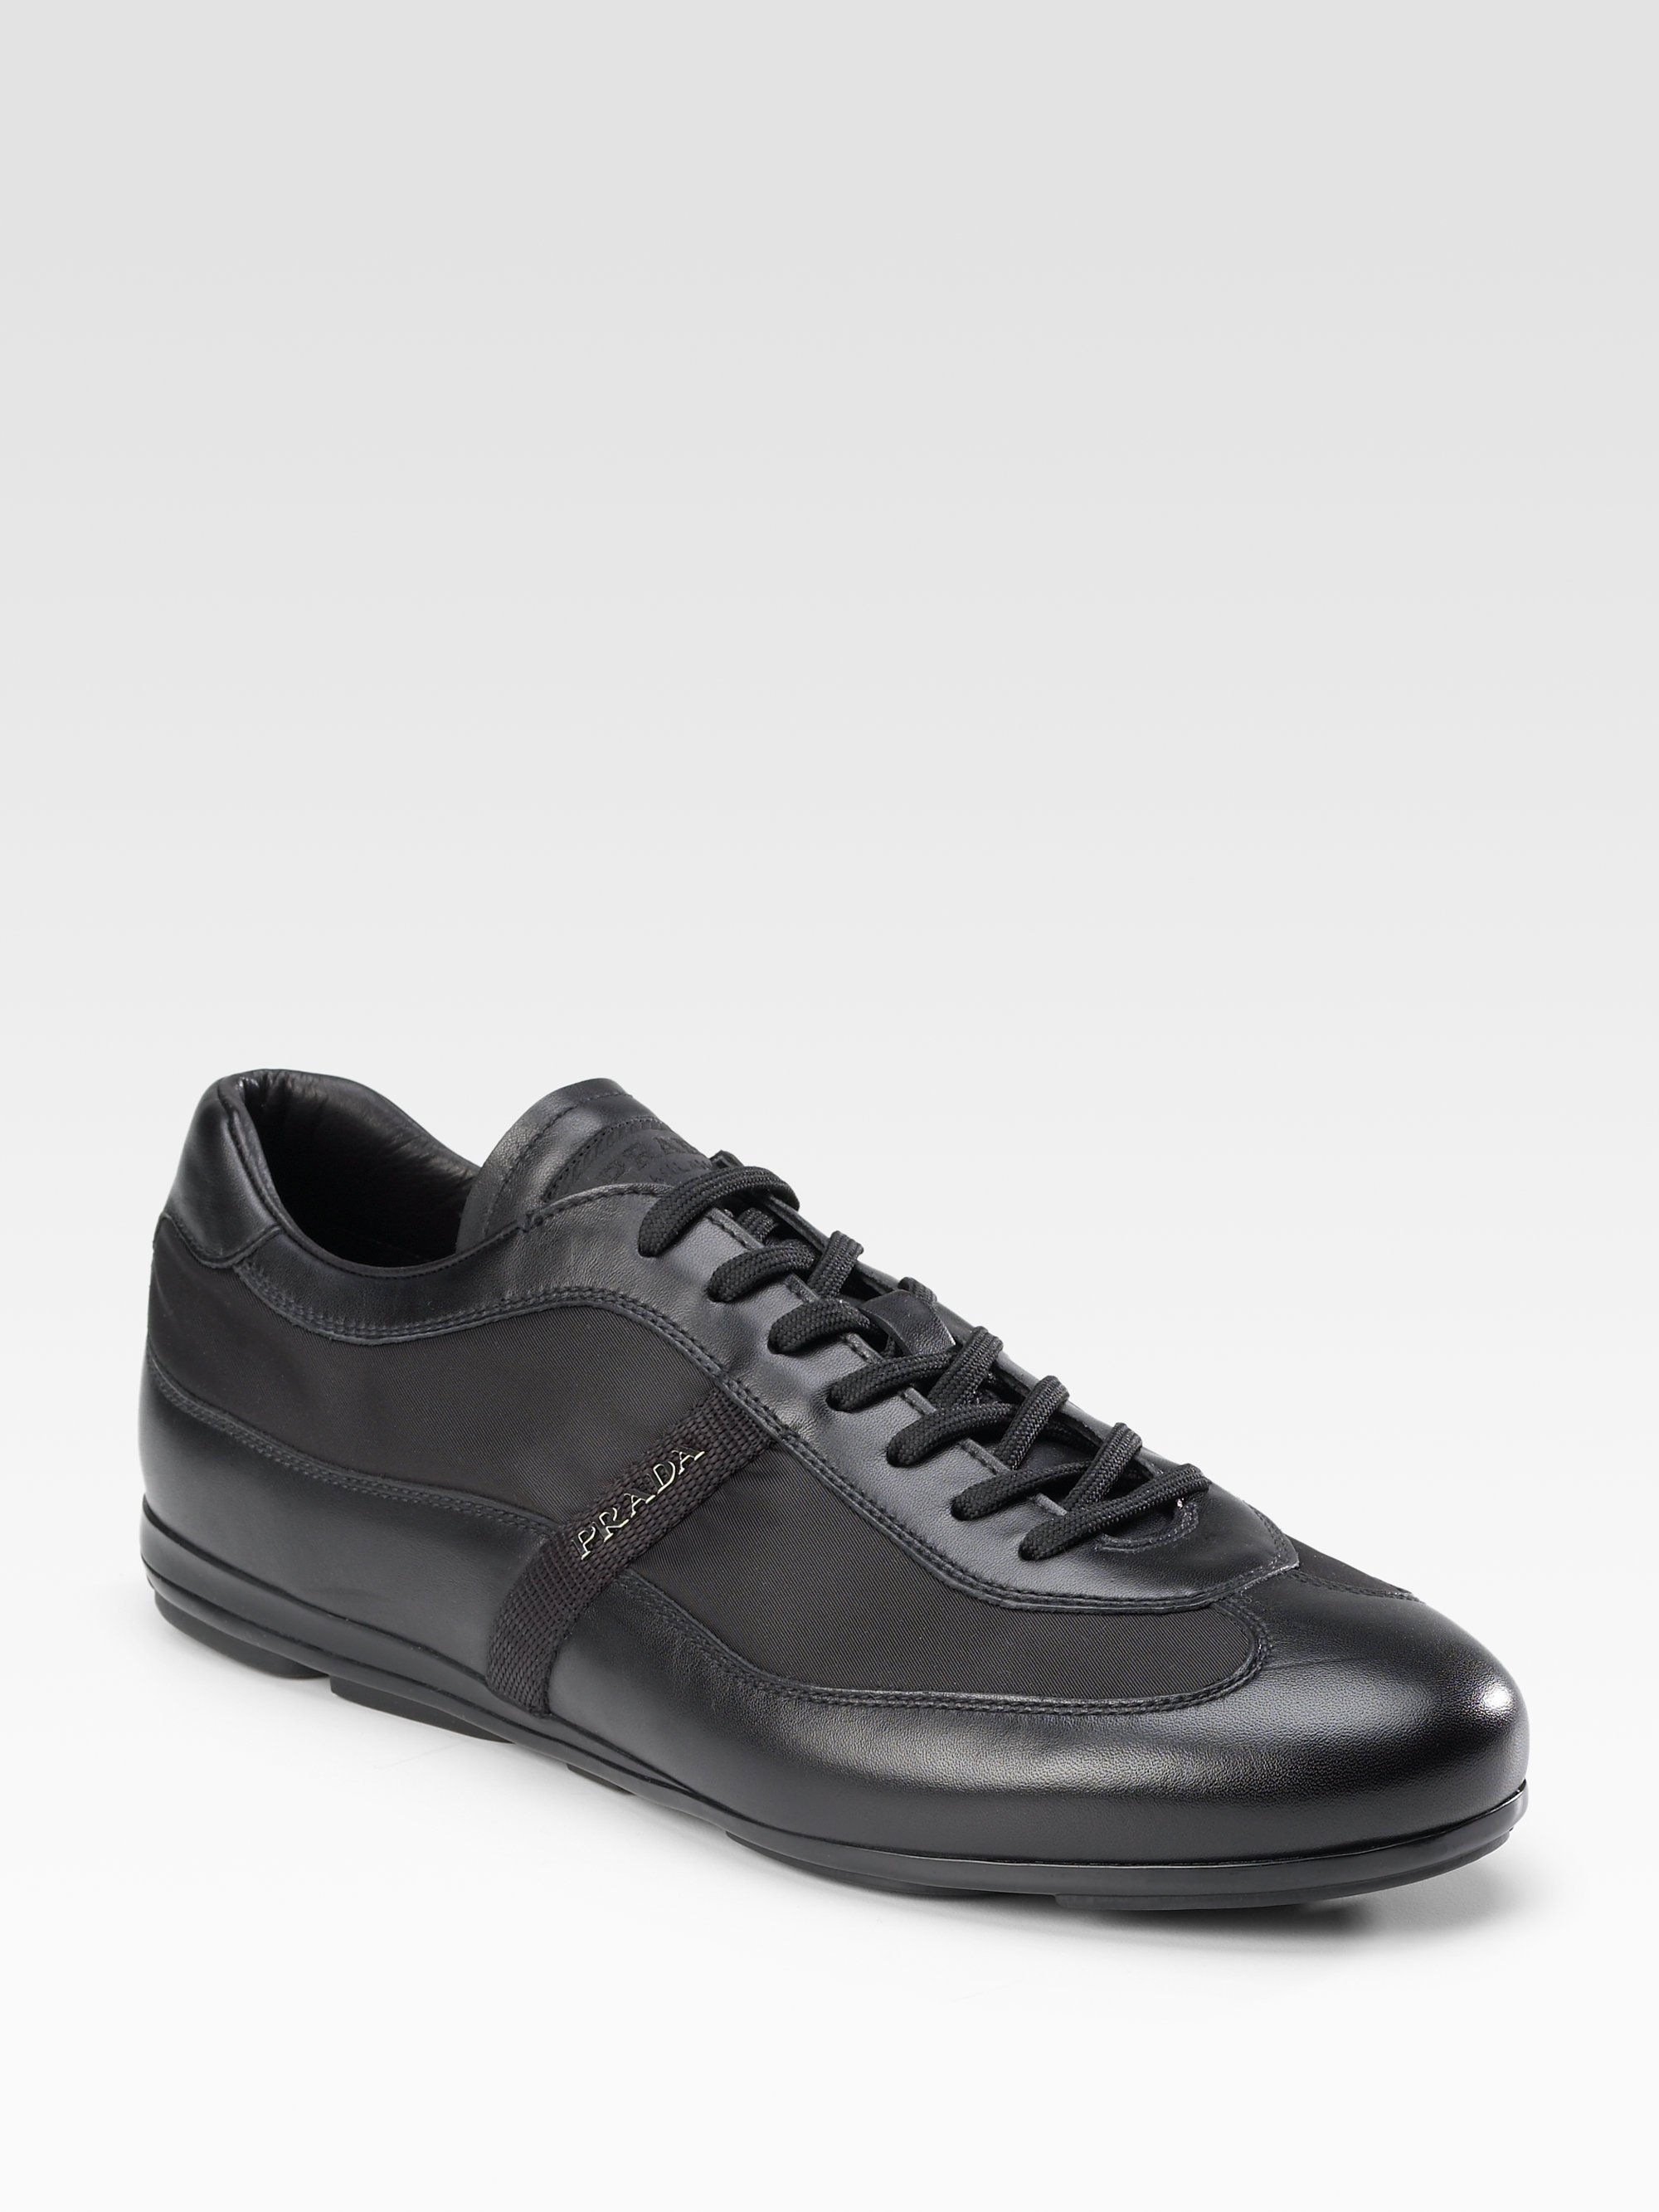 Prada Nylon Sneakers in Black for Men | Lyst